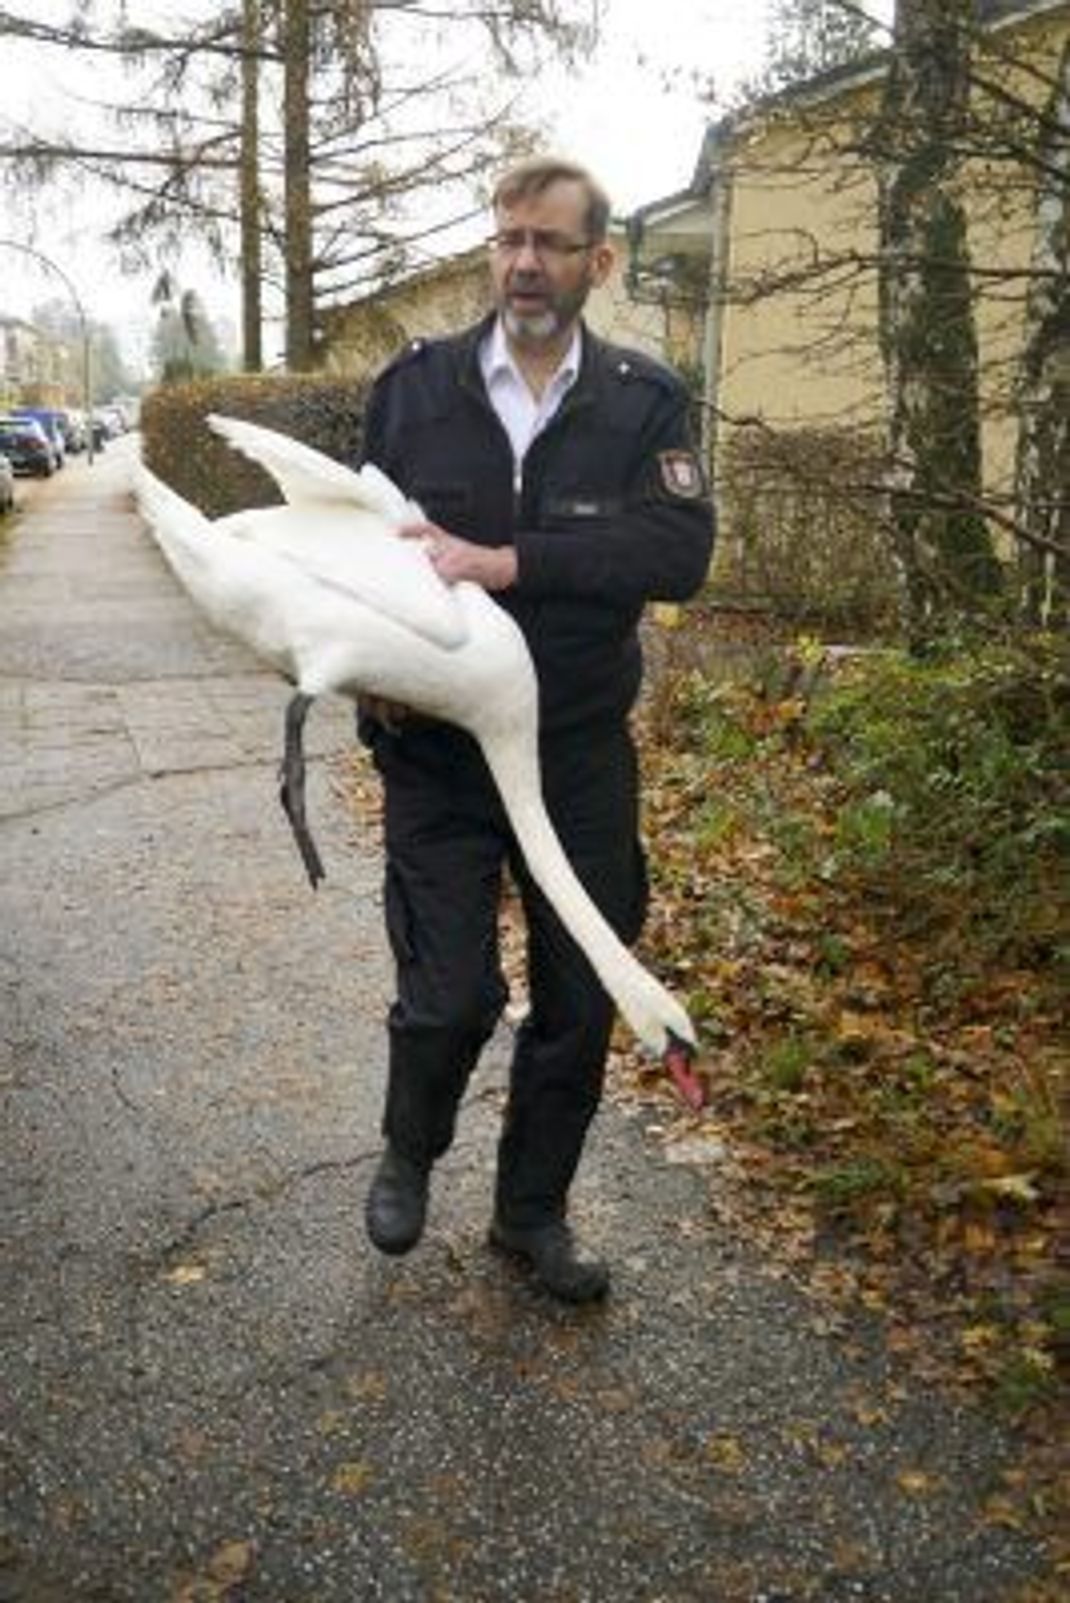 Schwanenvater Olaf Nieß rettet einen Schwan, der von einem Dach gestürzt war.